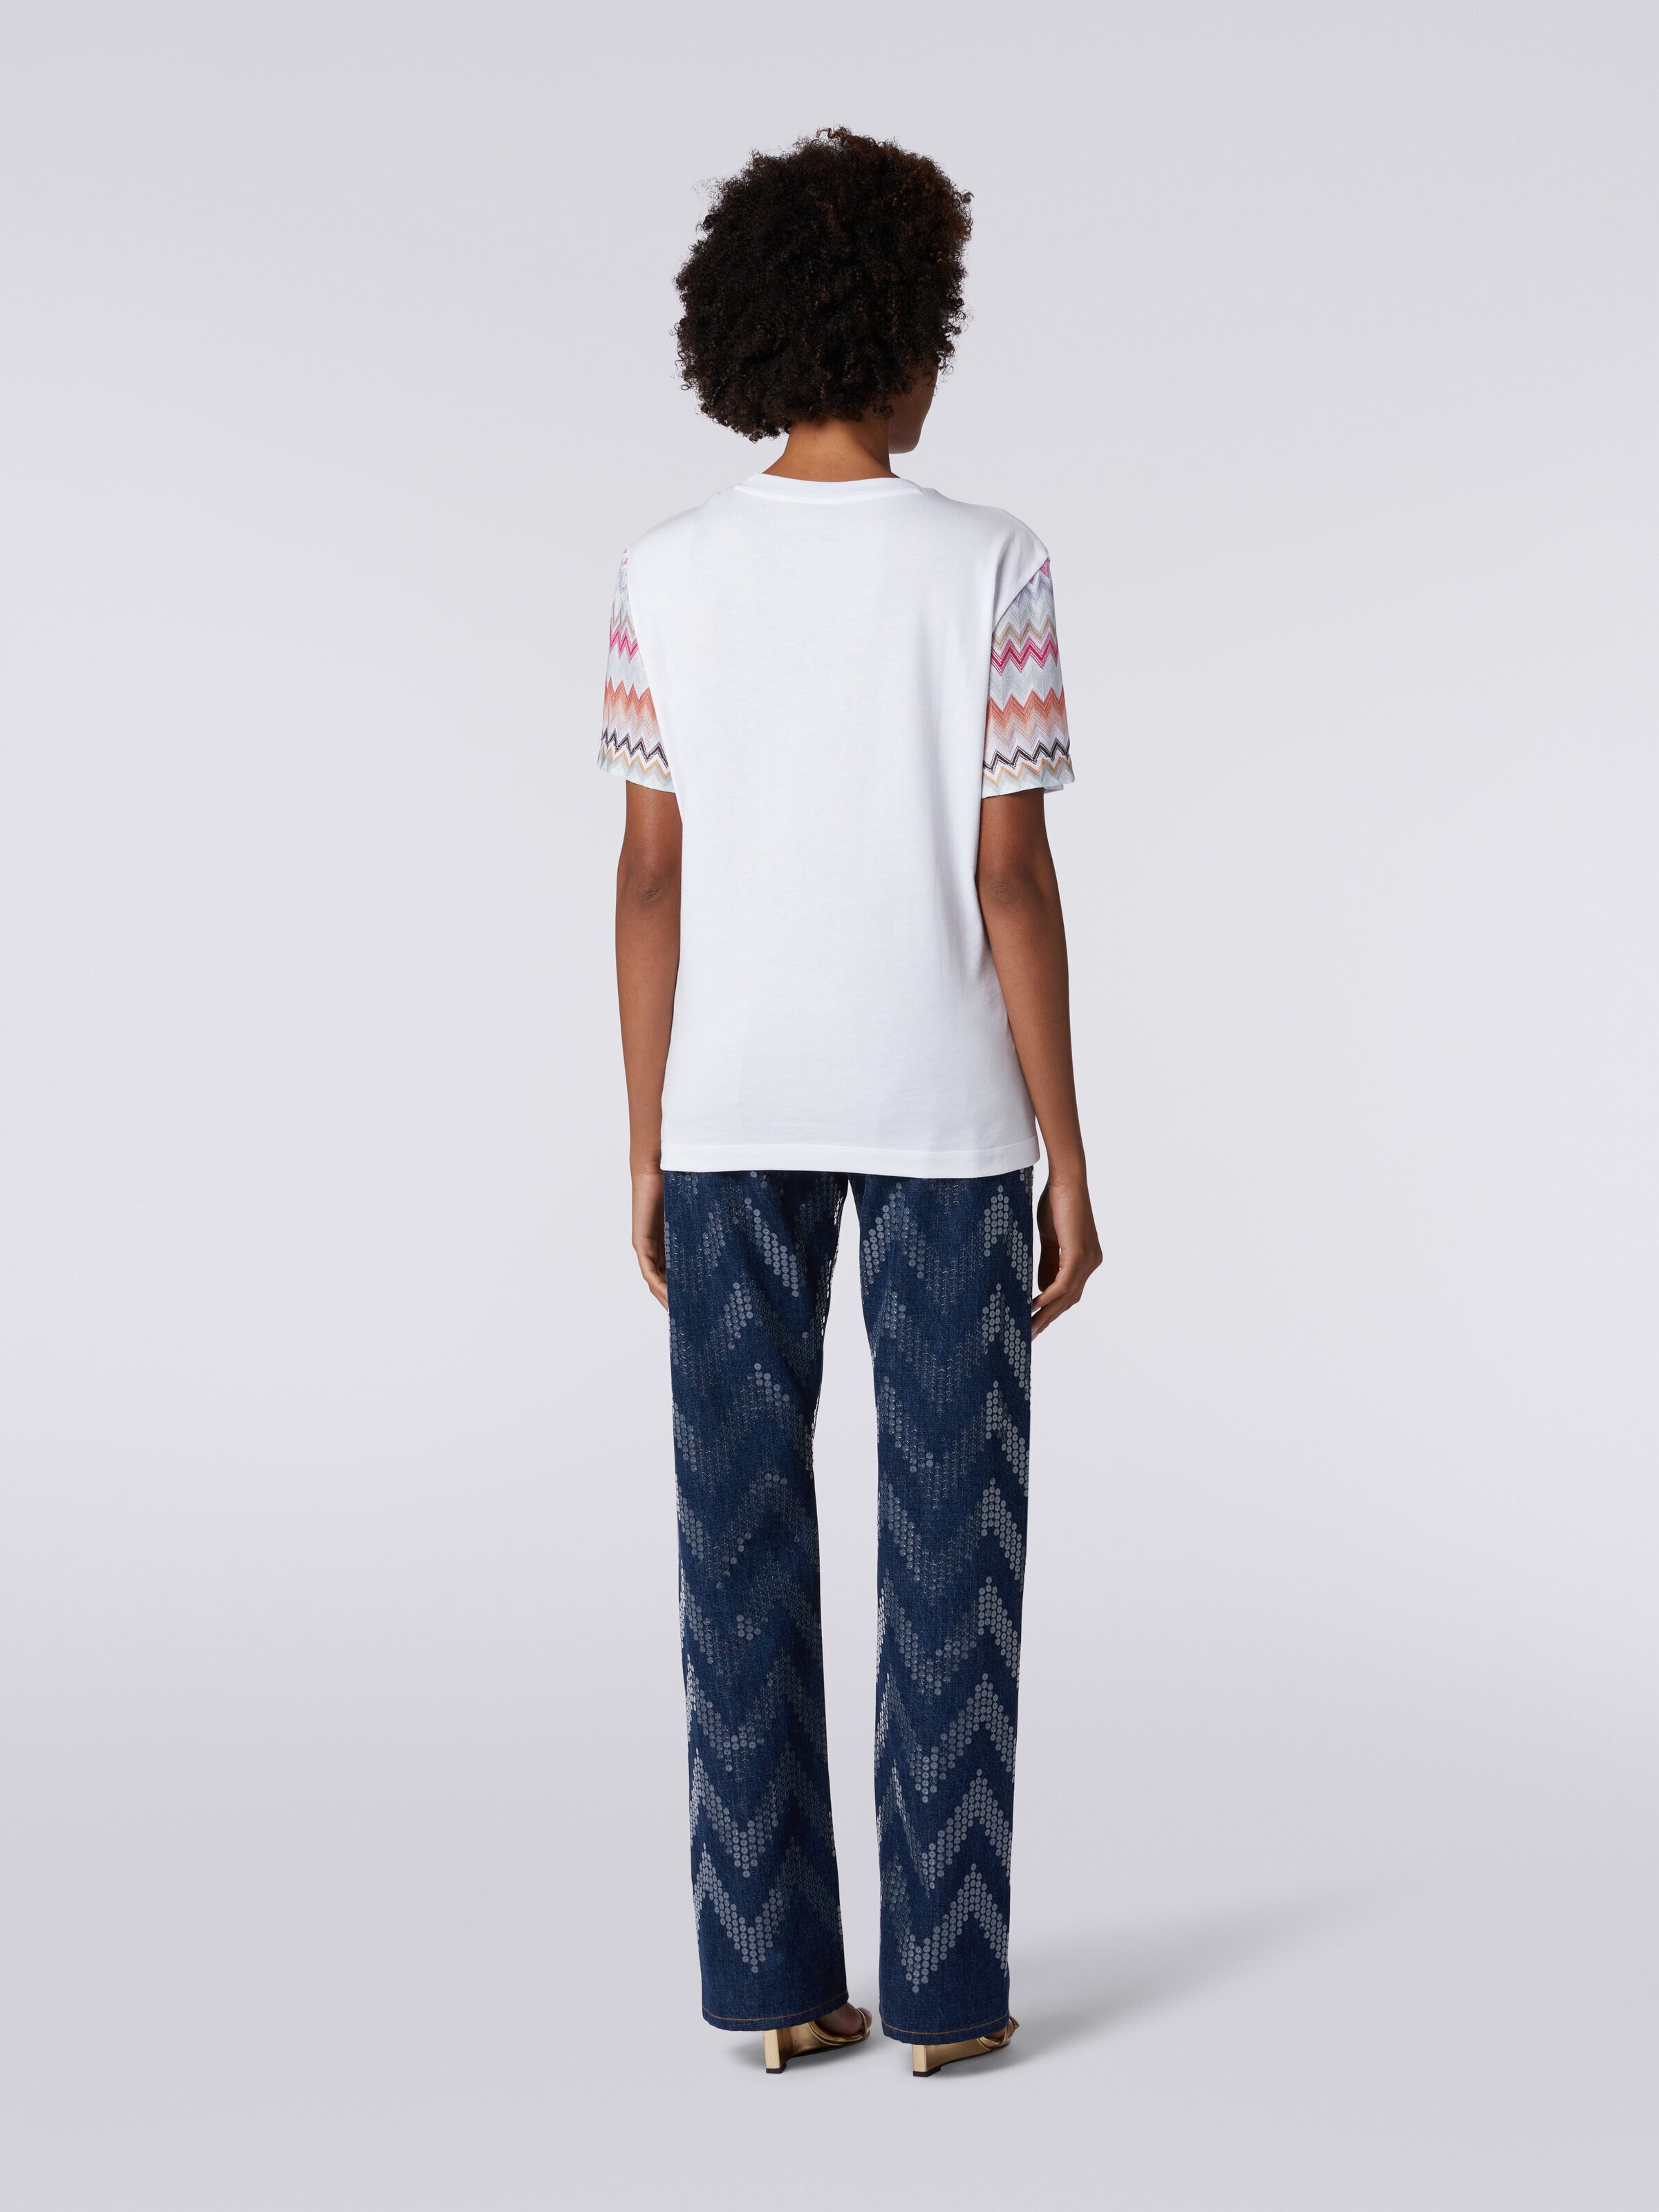 Camiseta de cuello redondo de algodón con inserciones zigzag, Multicolor  - 3